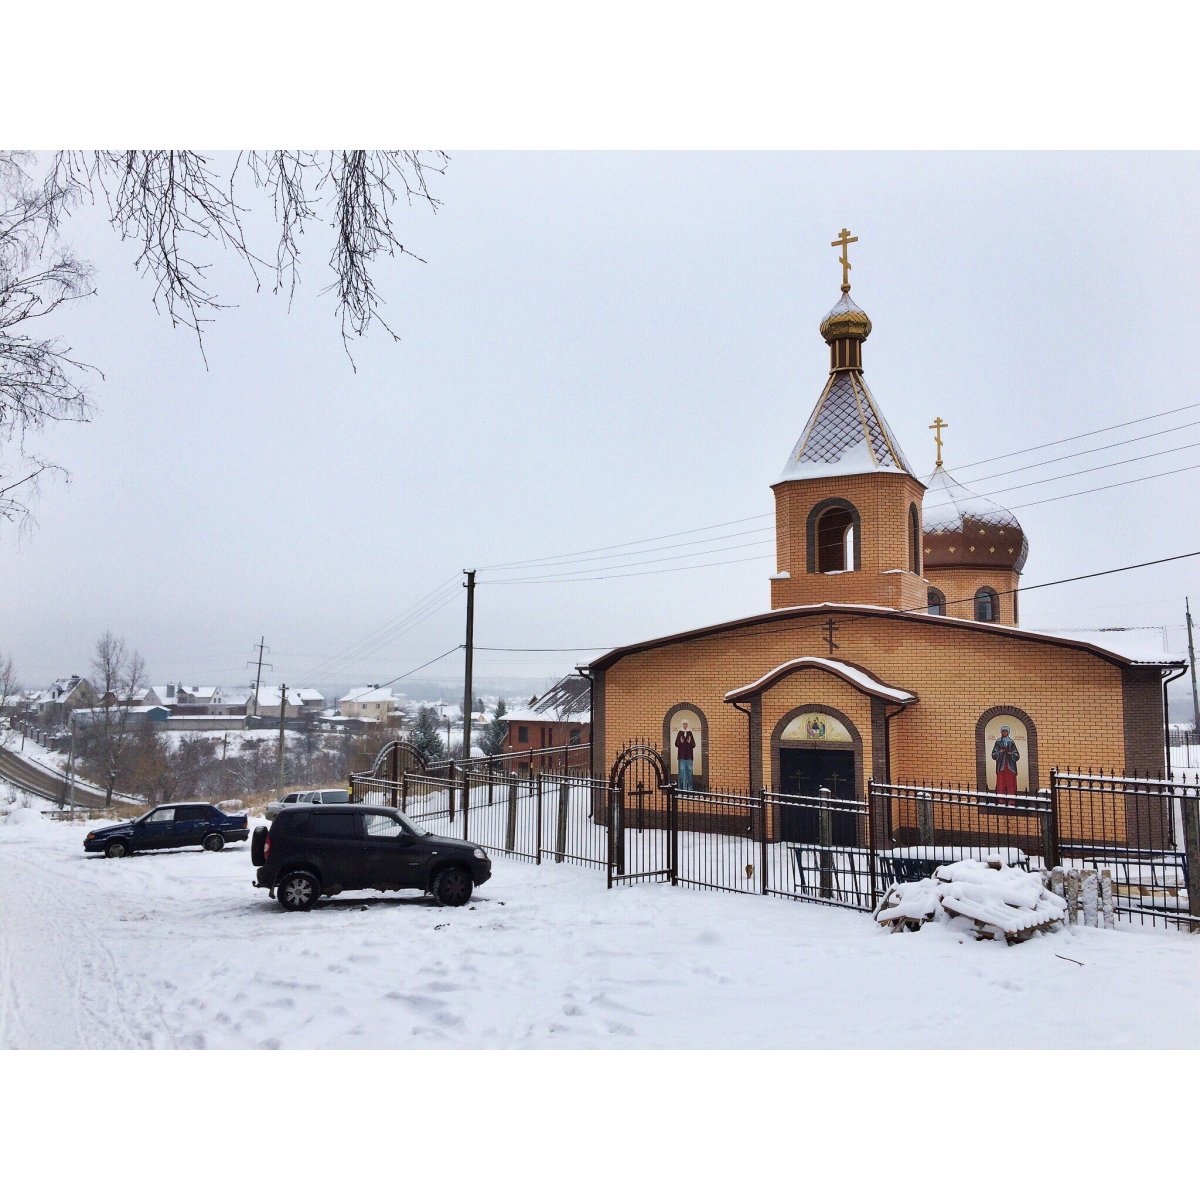 храм ксении петербургской в благовещенске амурской области